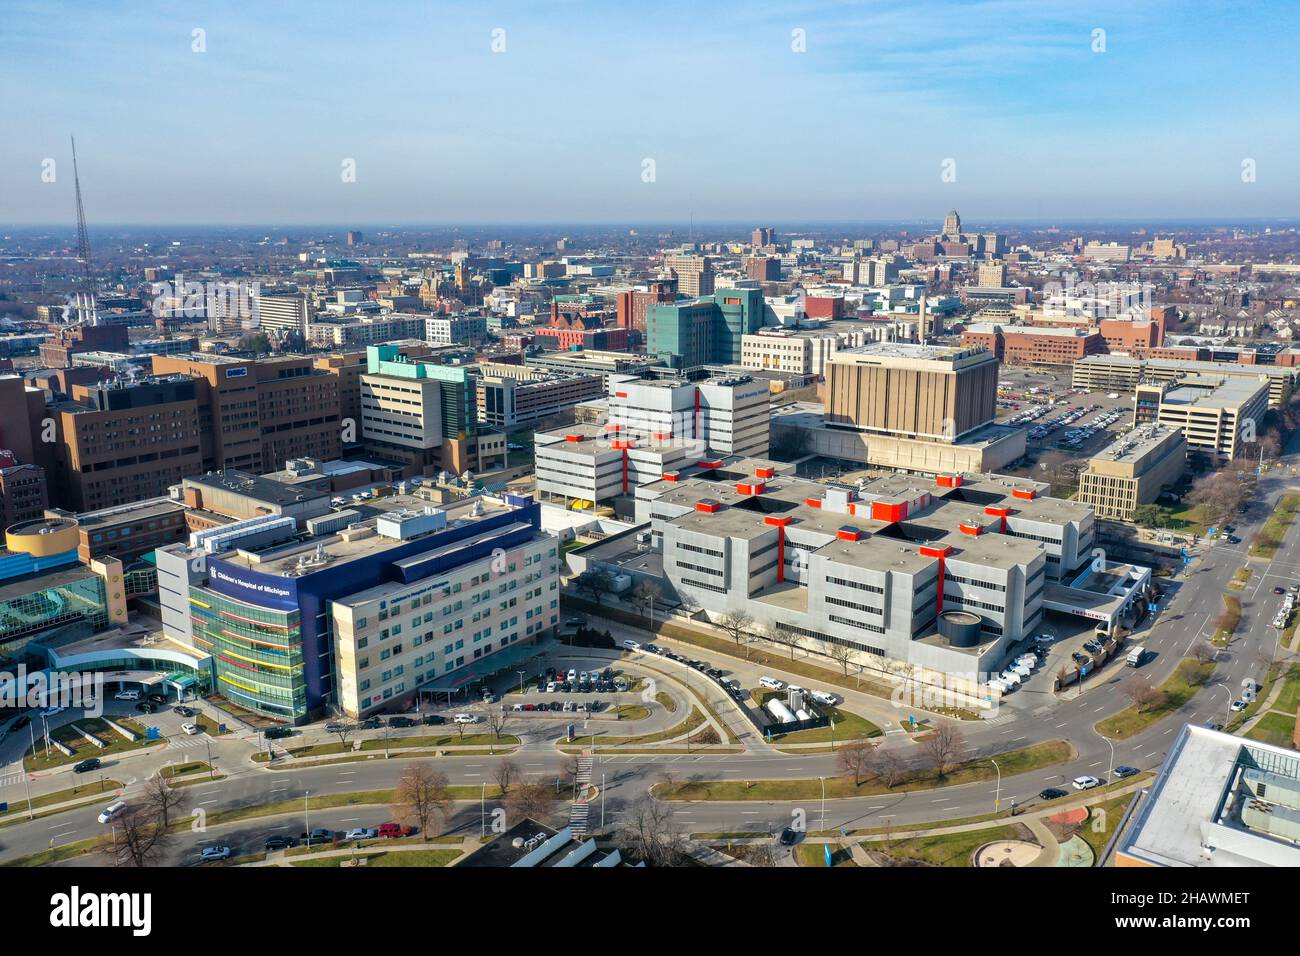 Detroit, Michigan - le Detroit Medical Center, une collection d'hôpitaux exploités par Tenet Healthcare.C'est le plus grand fournisseur de soins de santé de sout Banque D'Images